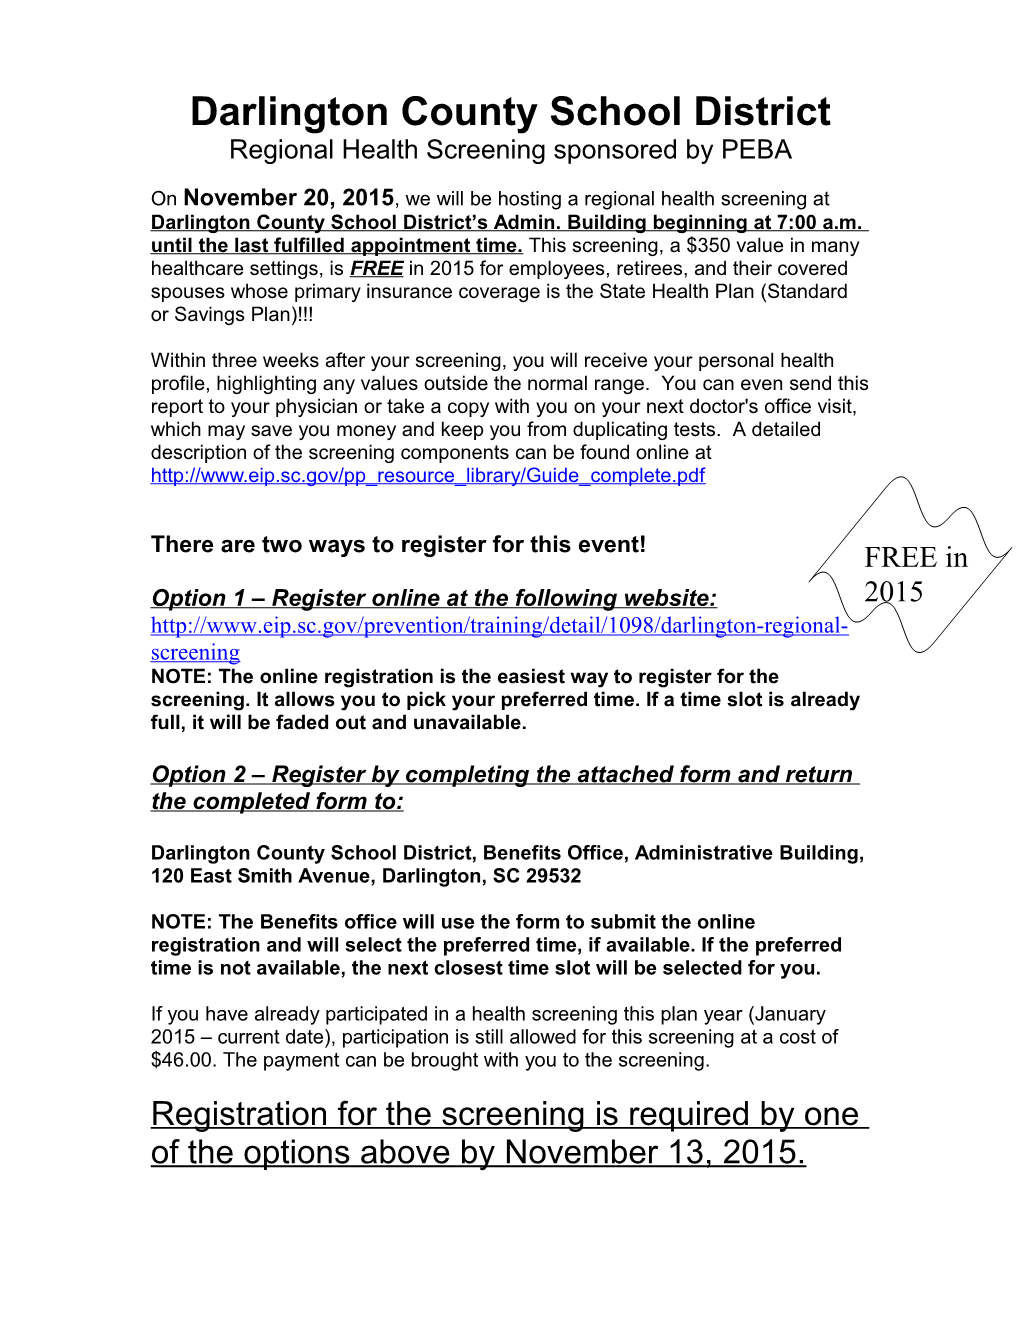 Worksite Screening Registration Form